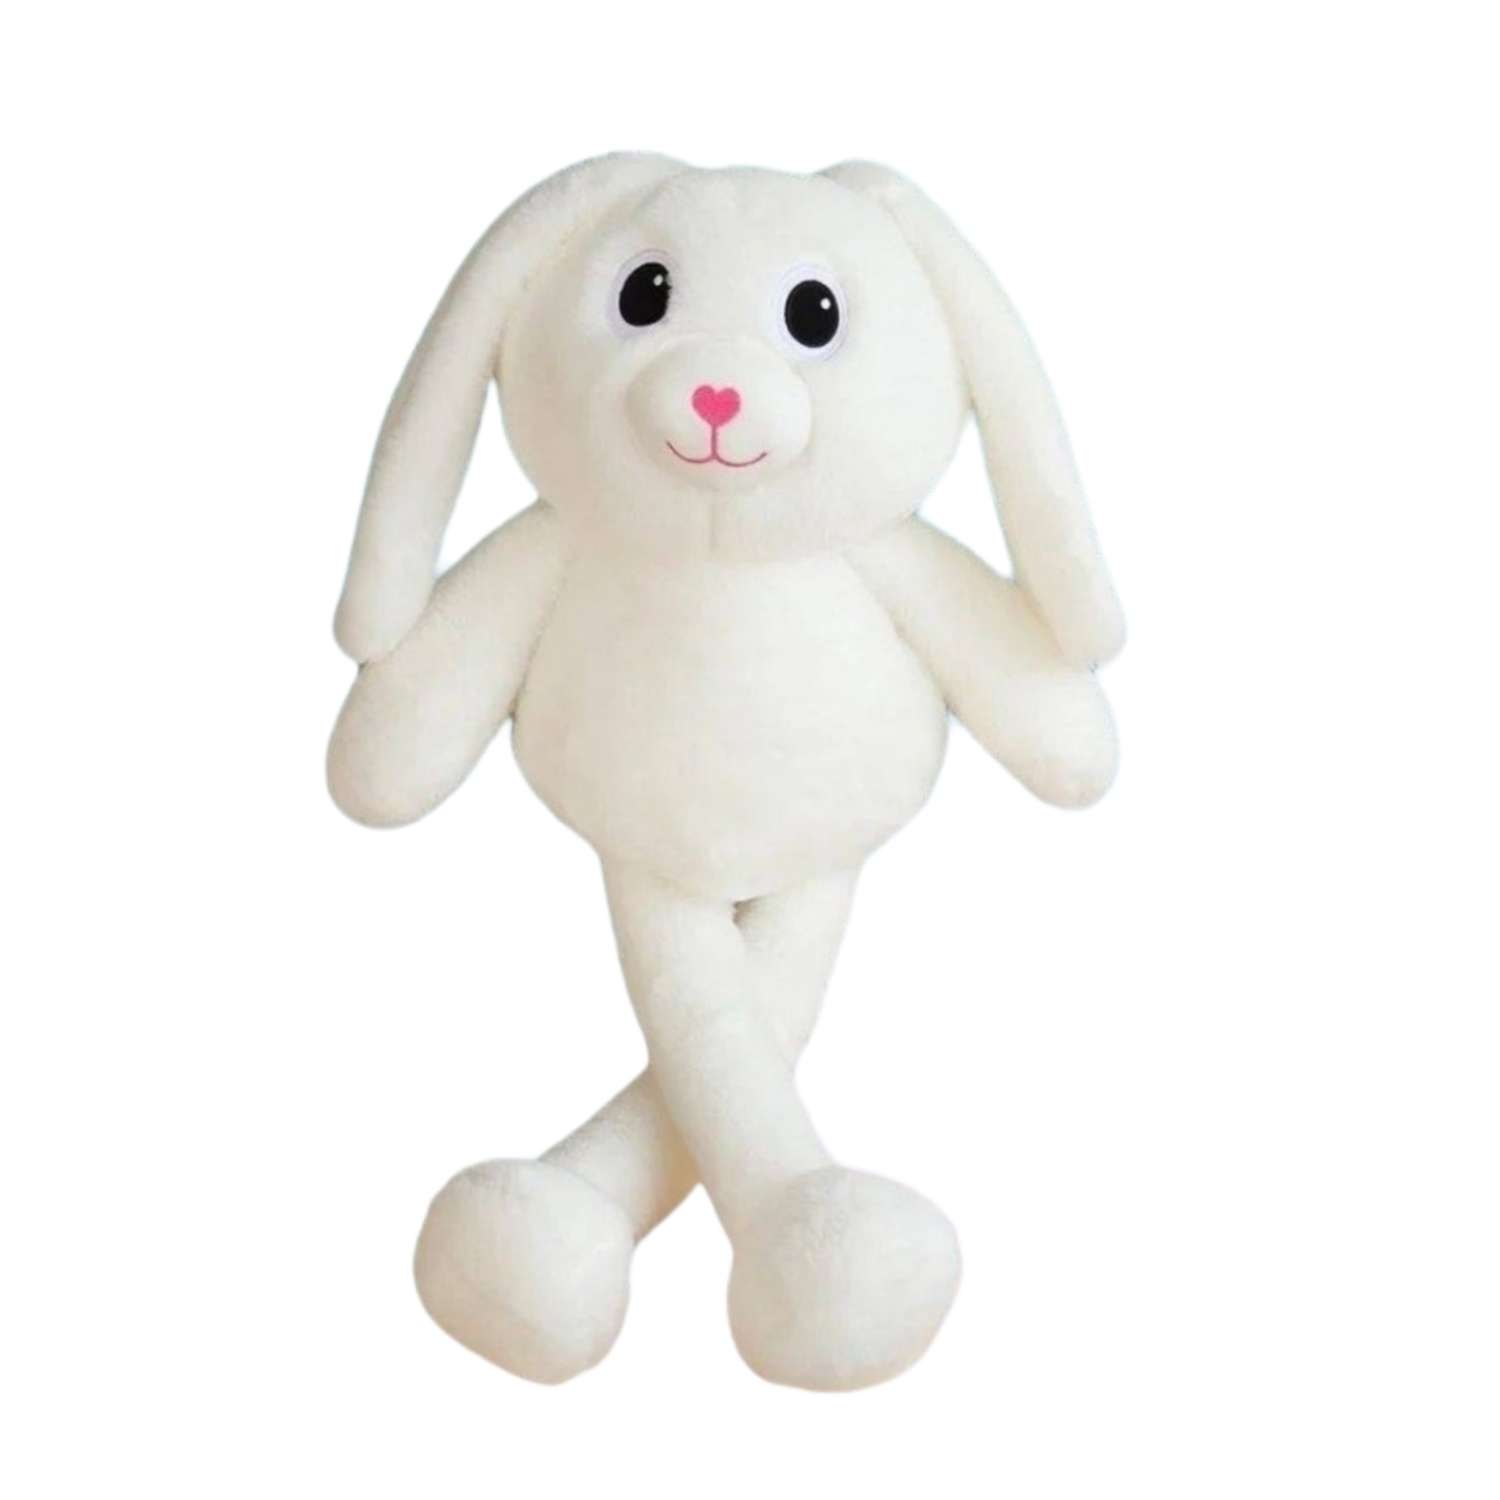 Мягкую игрушку зайку купить – цены на плюшевых зайцев в Минске